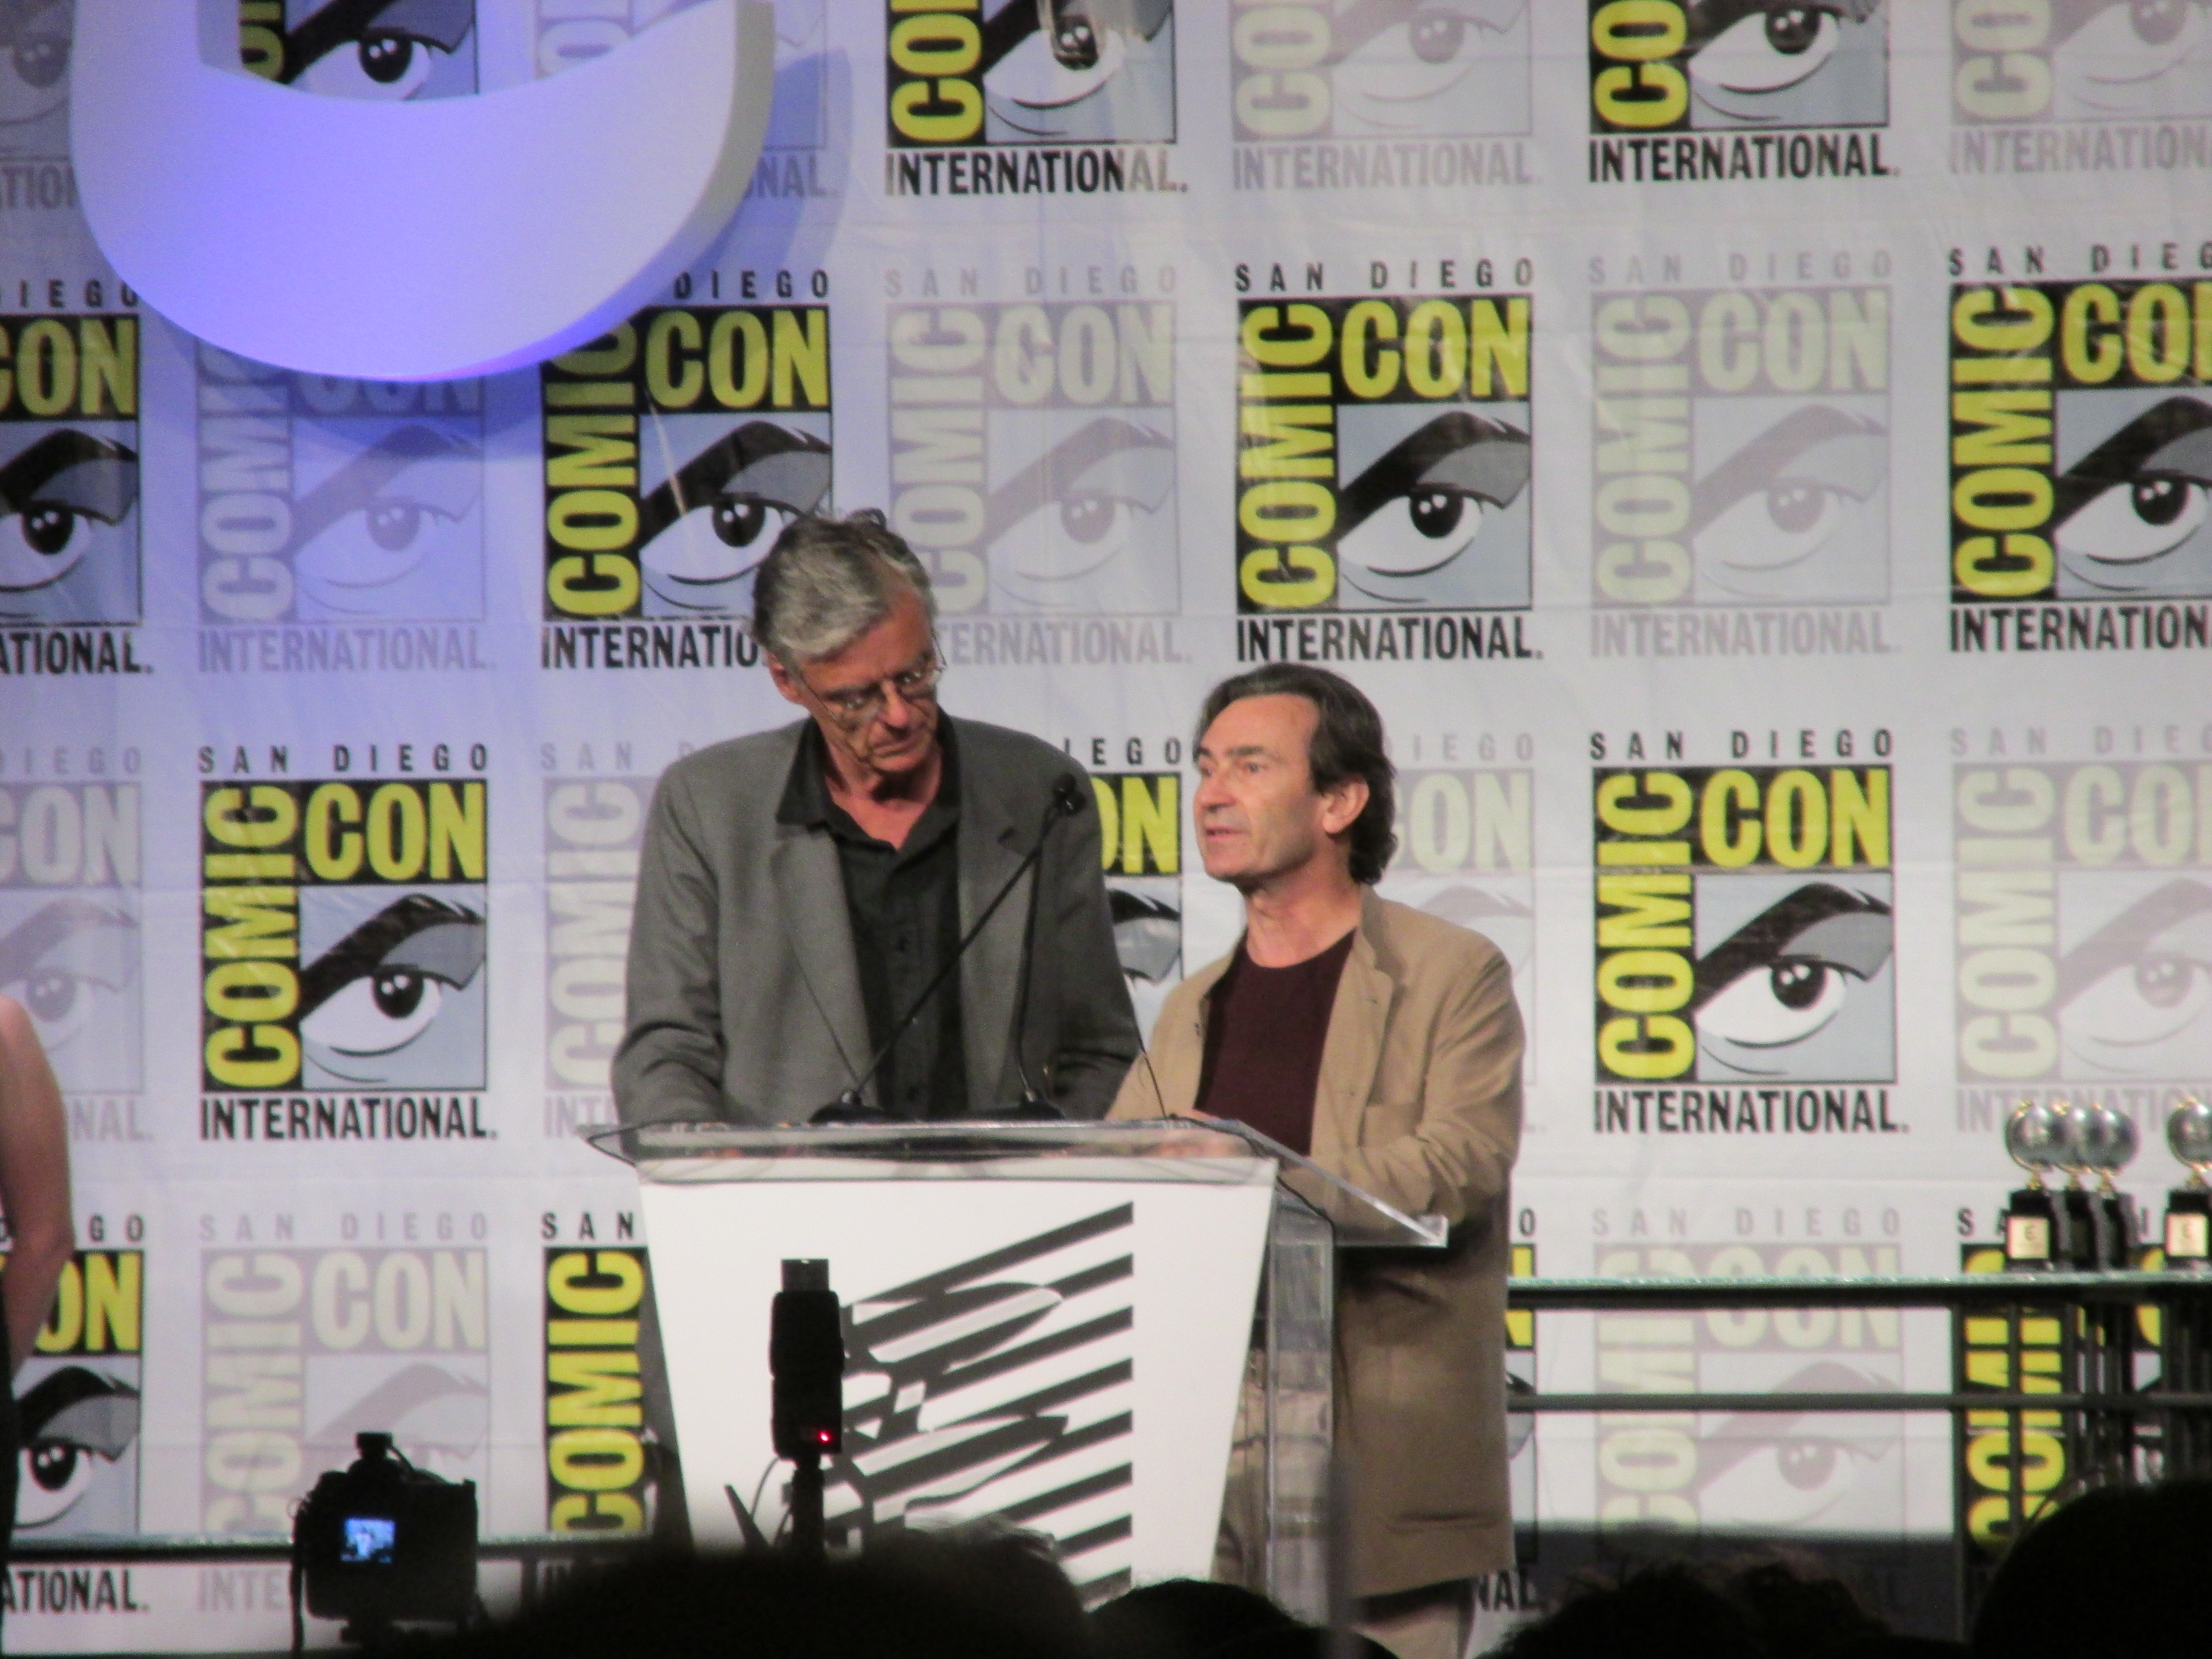 François Schuiten en Benoît Peeters presenteren de Eisner Awards op Comic Con 2014